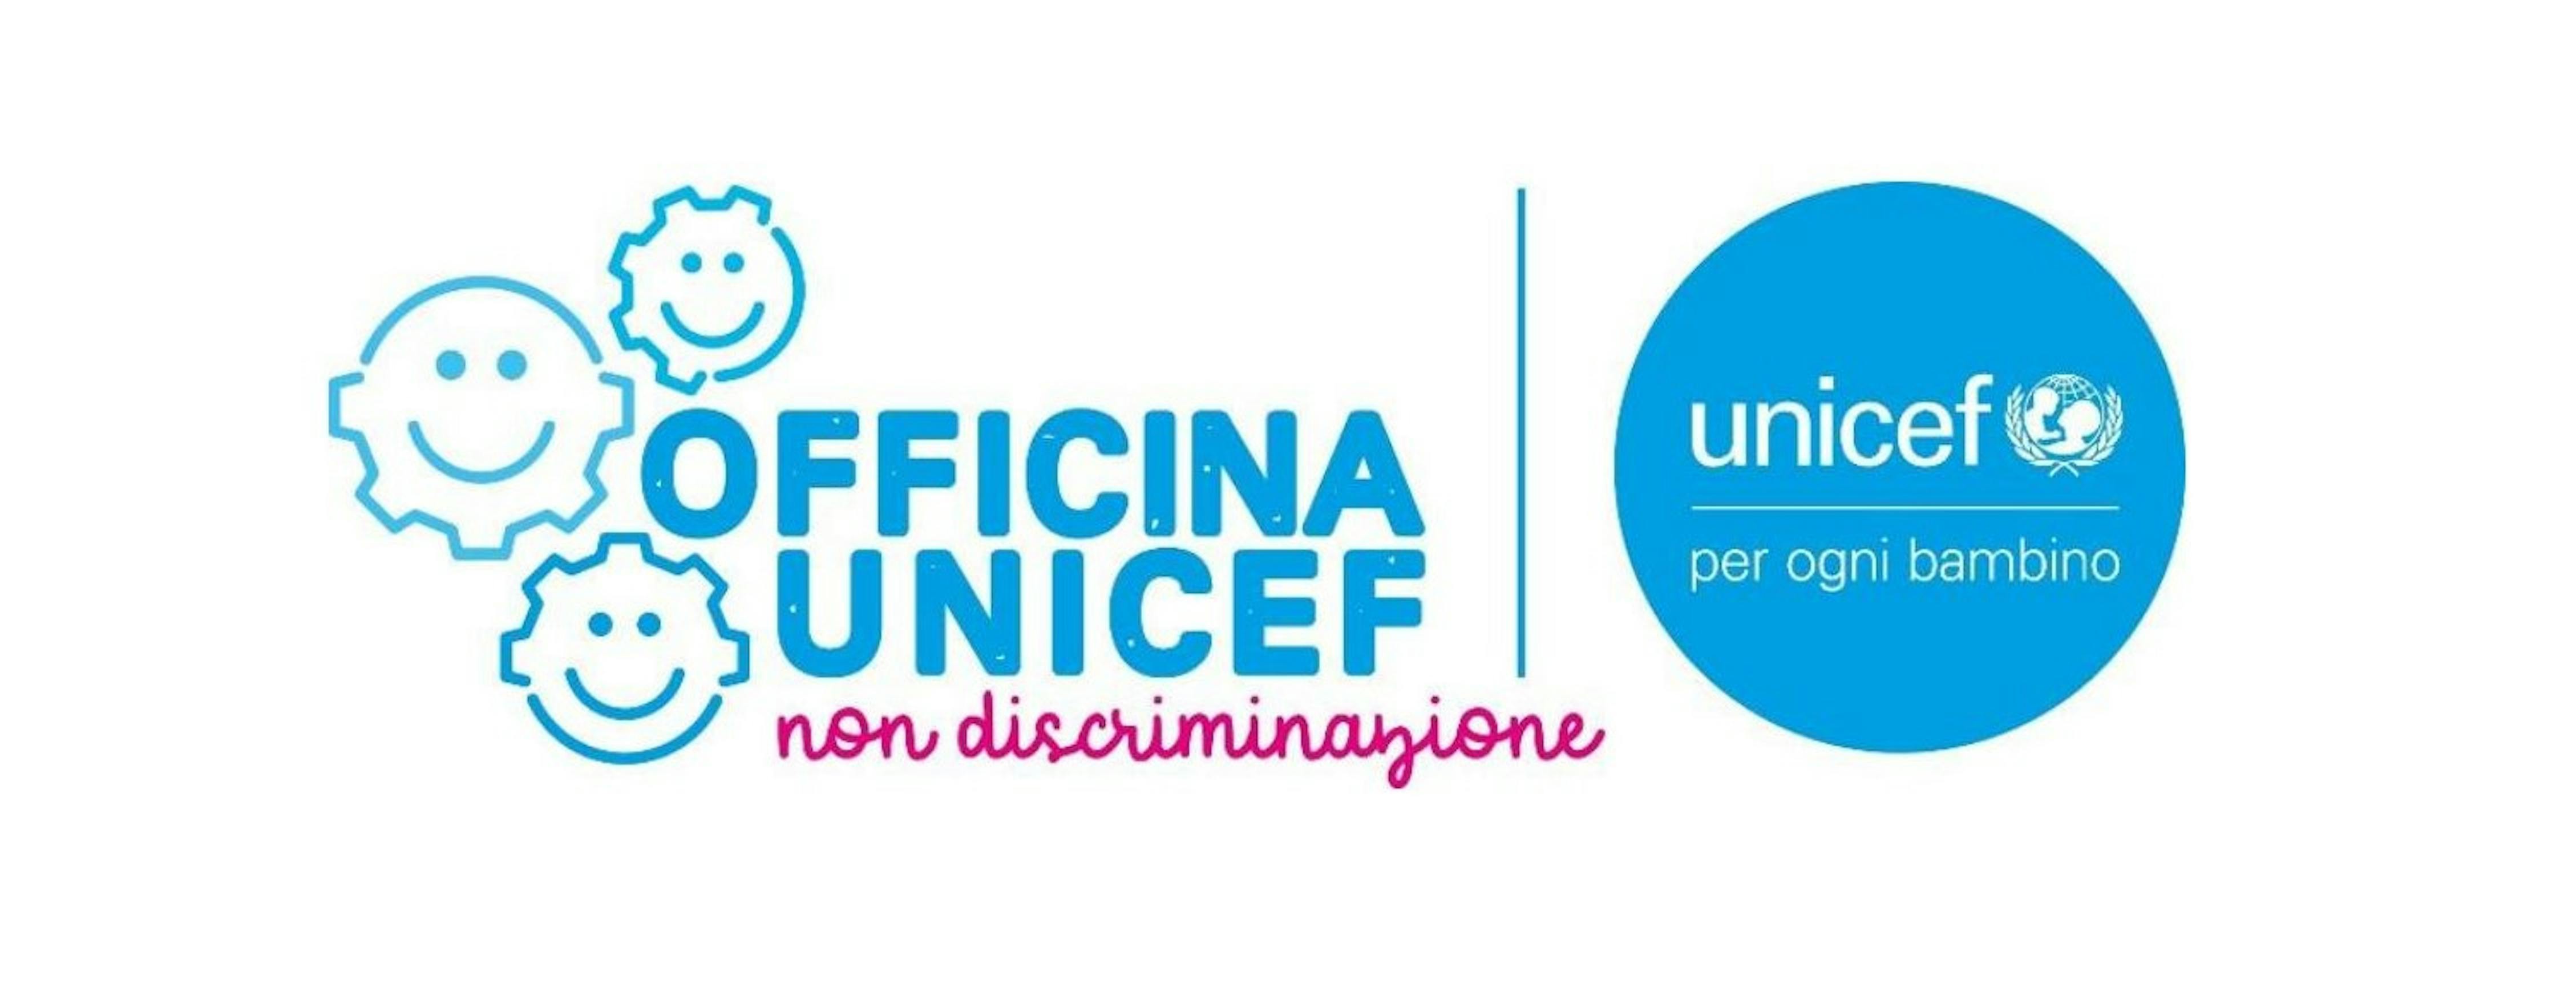 Officina UNICEF - Non discriminazione